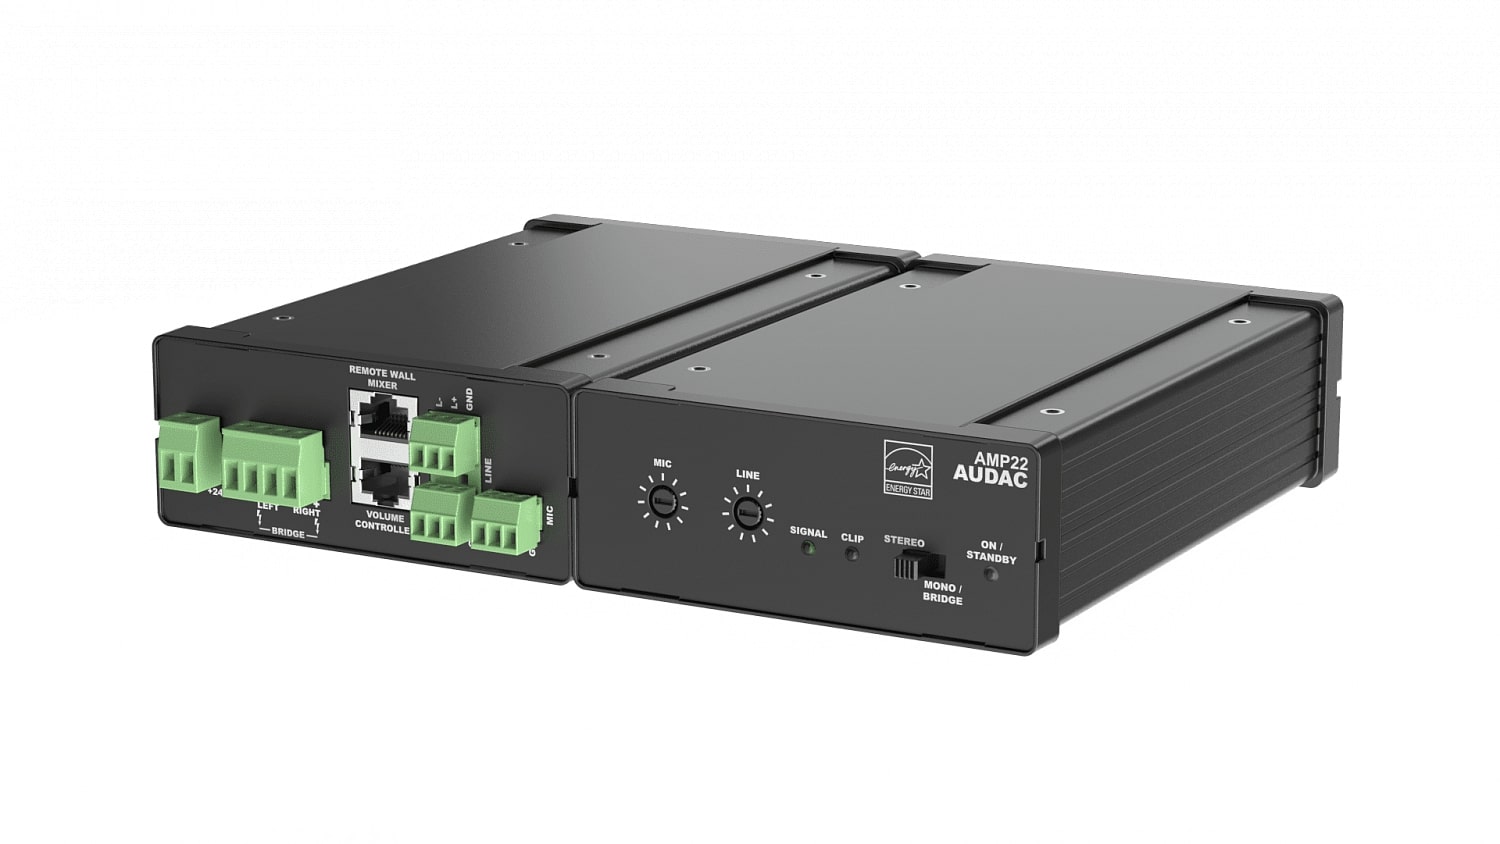 Усилители двухканальные Audac AMP22 панели управления audac mwx65 w